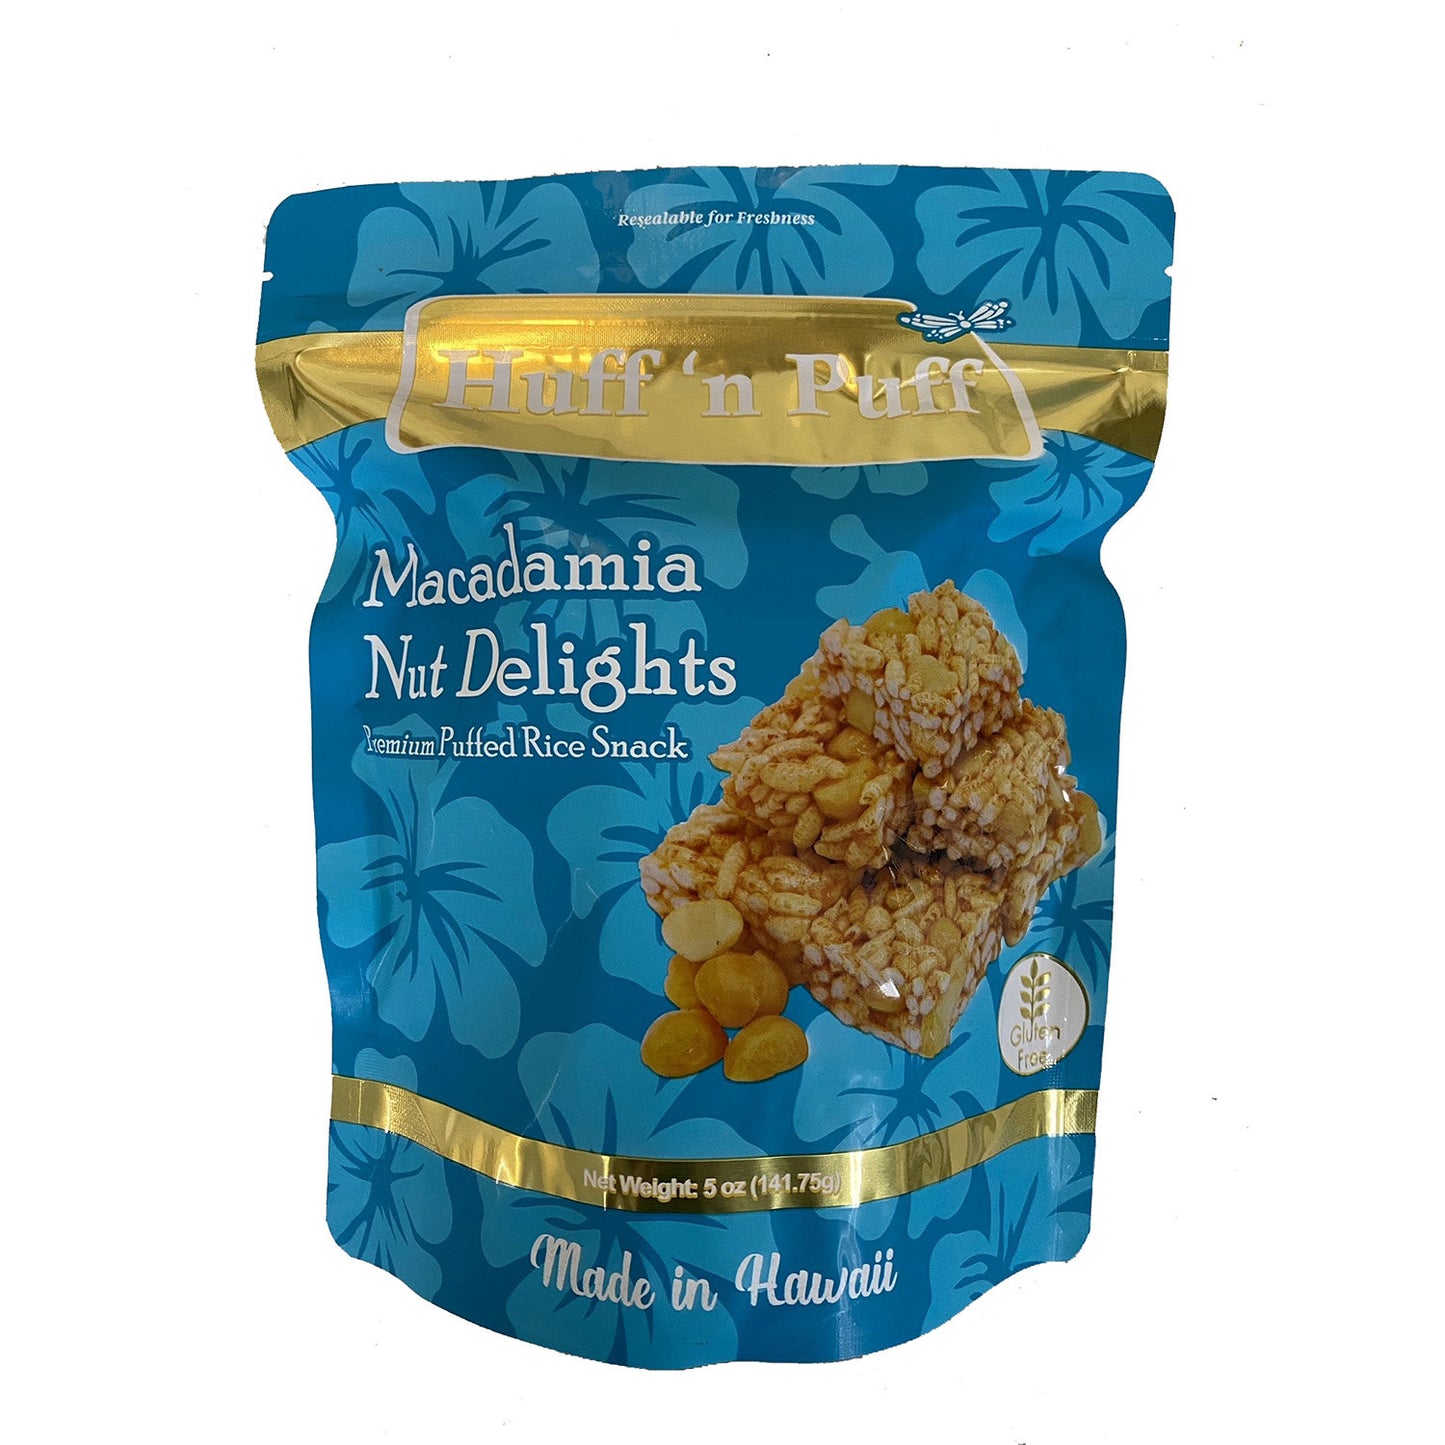 Macadamia Nut Delights